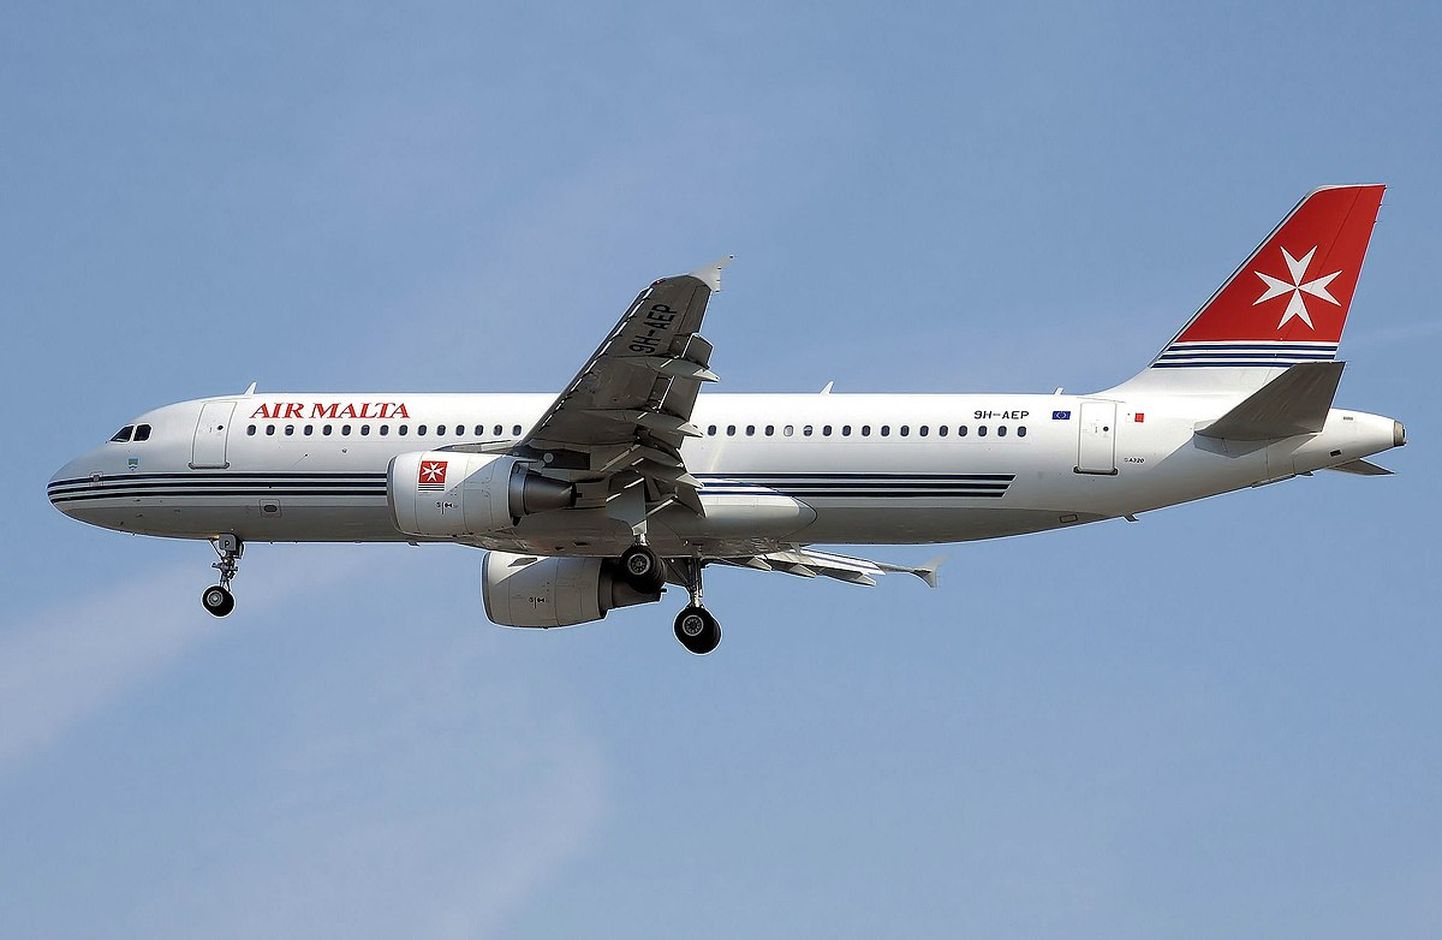 Pika ajalooga Air Malta lennuk 2007. aastal kasutatud värvikuues.